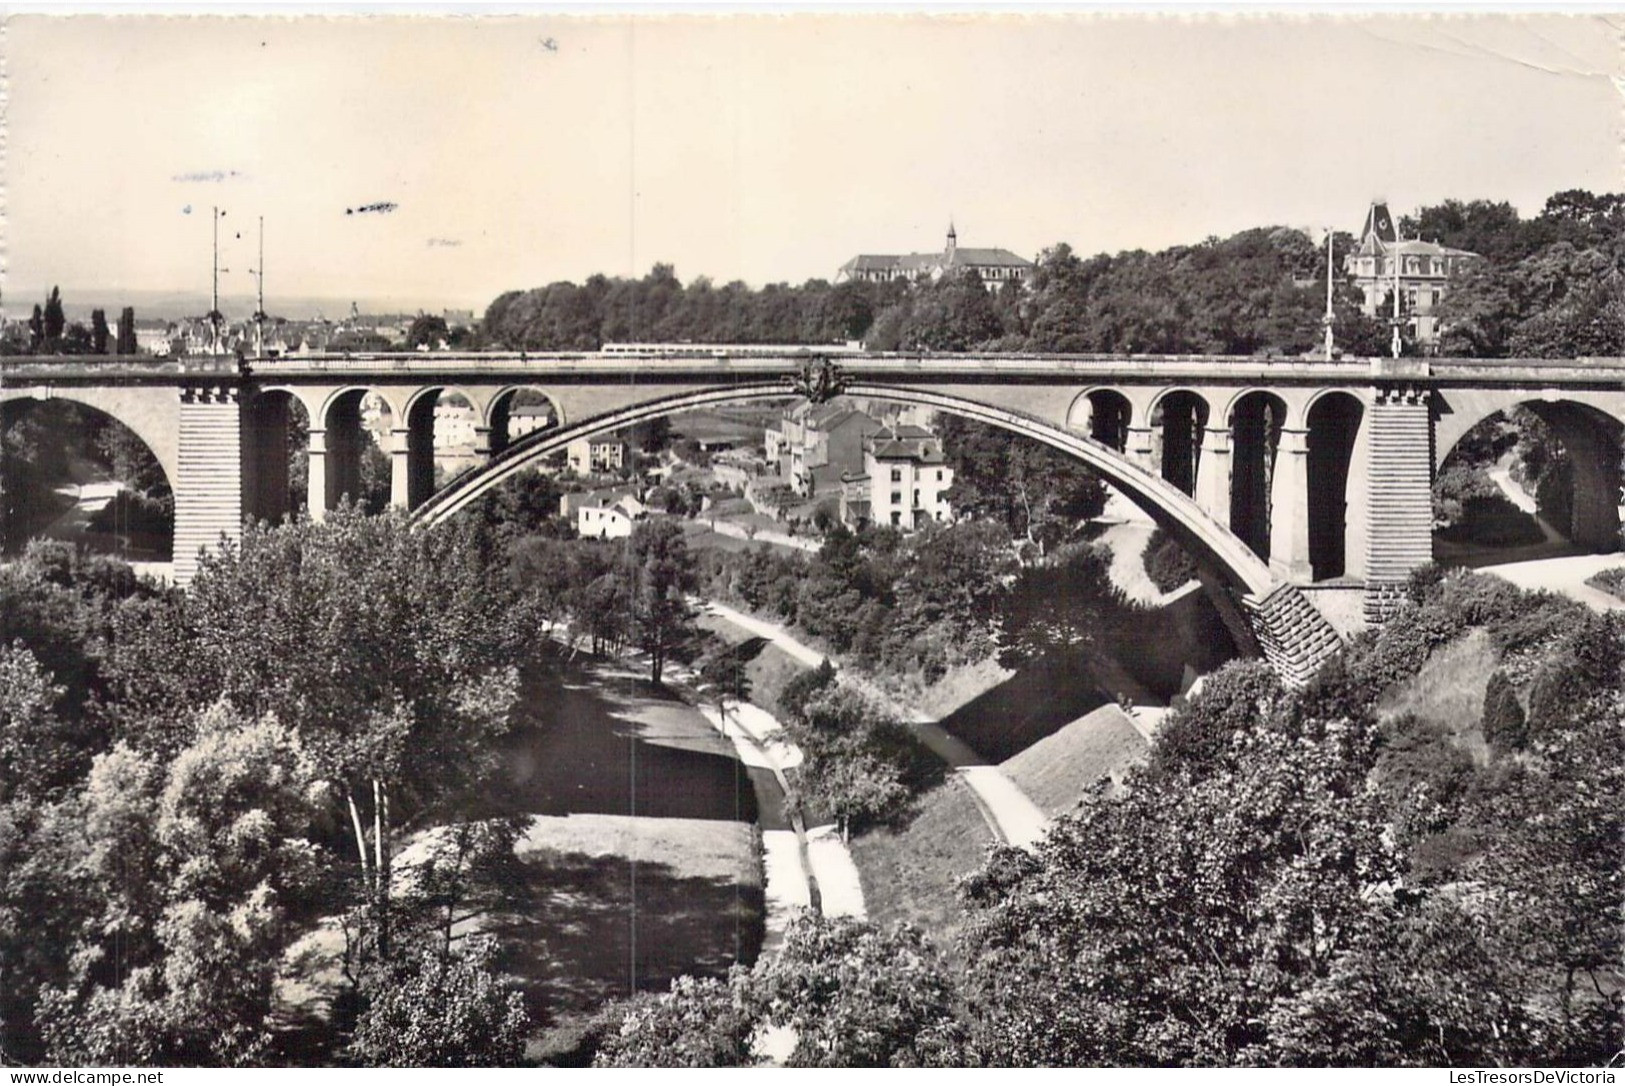 LUXEMBOURG - Pont Adolphe Et Vallée De La Pétrusse - Carte Postale Ancienne - Luxembourg - Ville